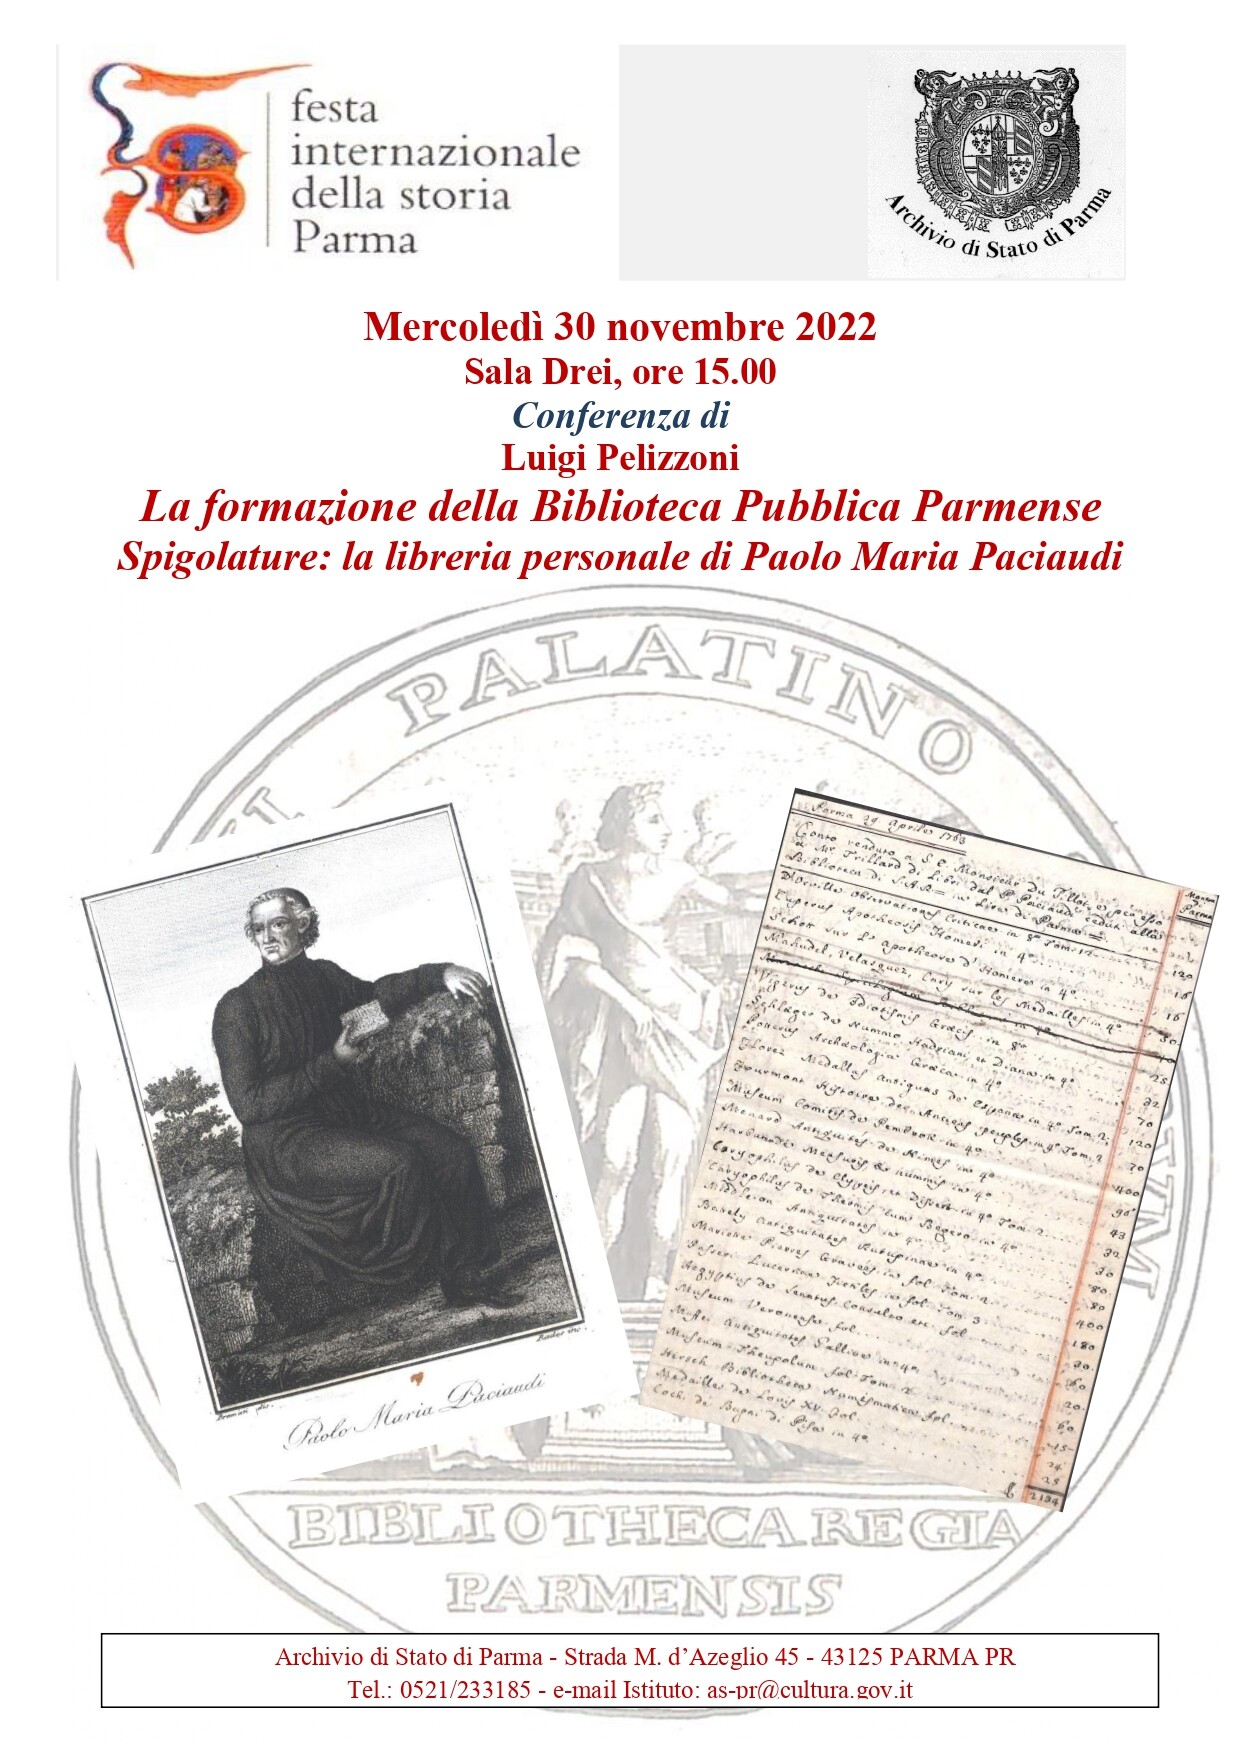 Festa internazionale della Storia - Parma - La formazione della Biblioteca Pubblica Parmense